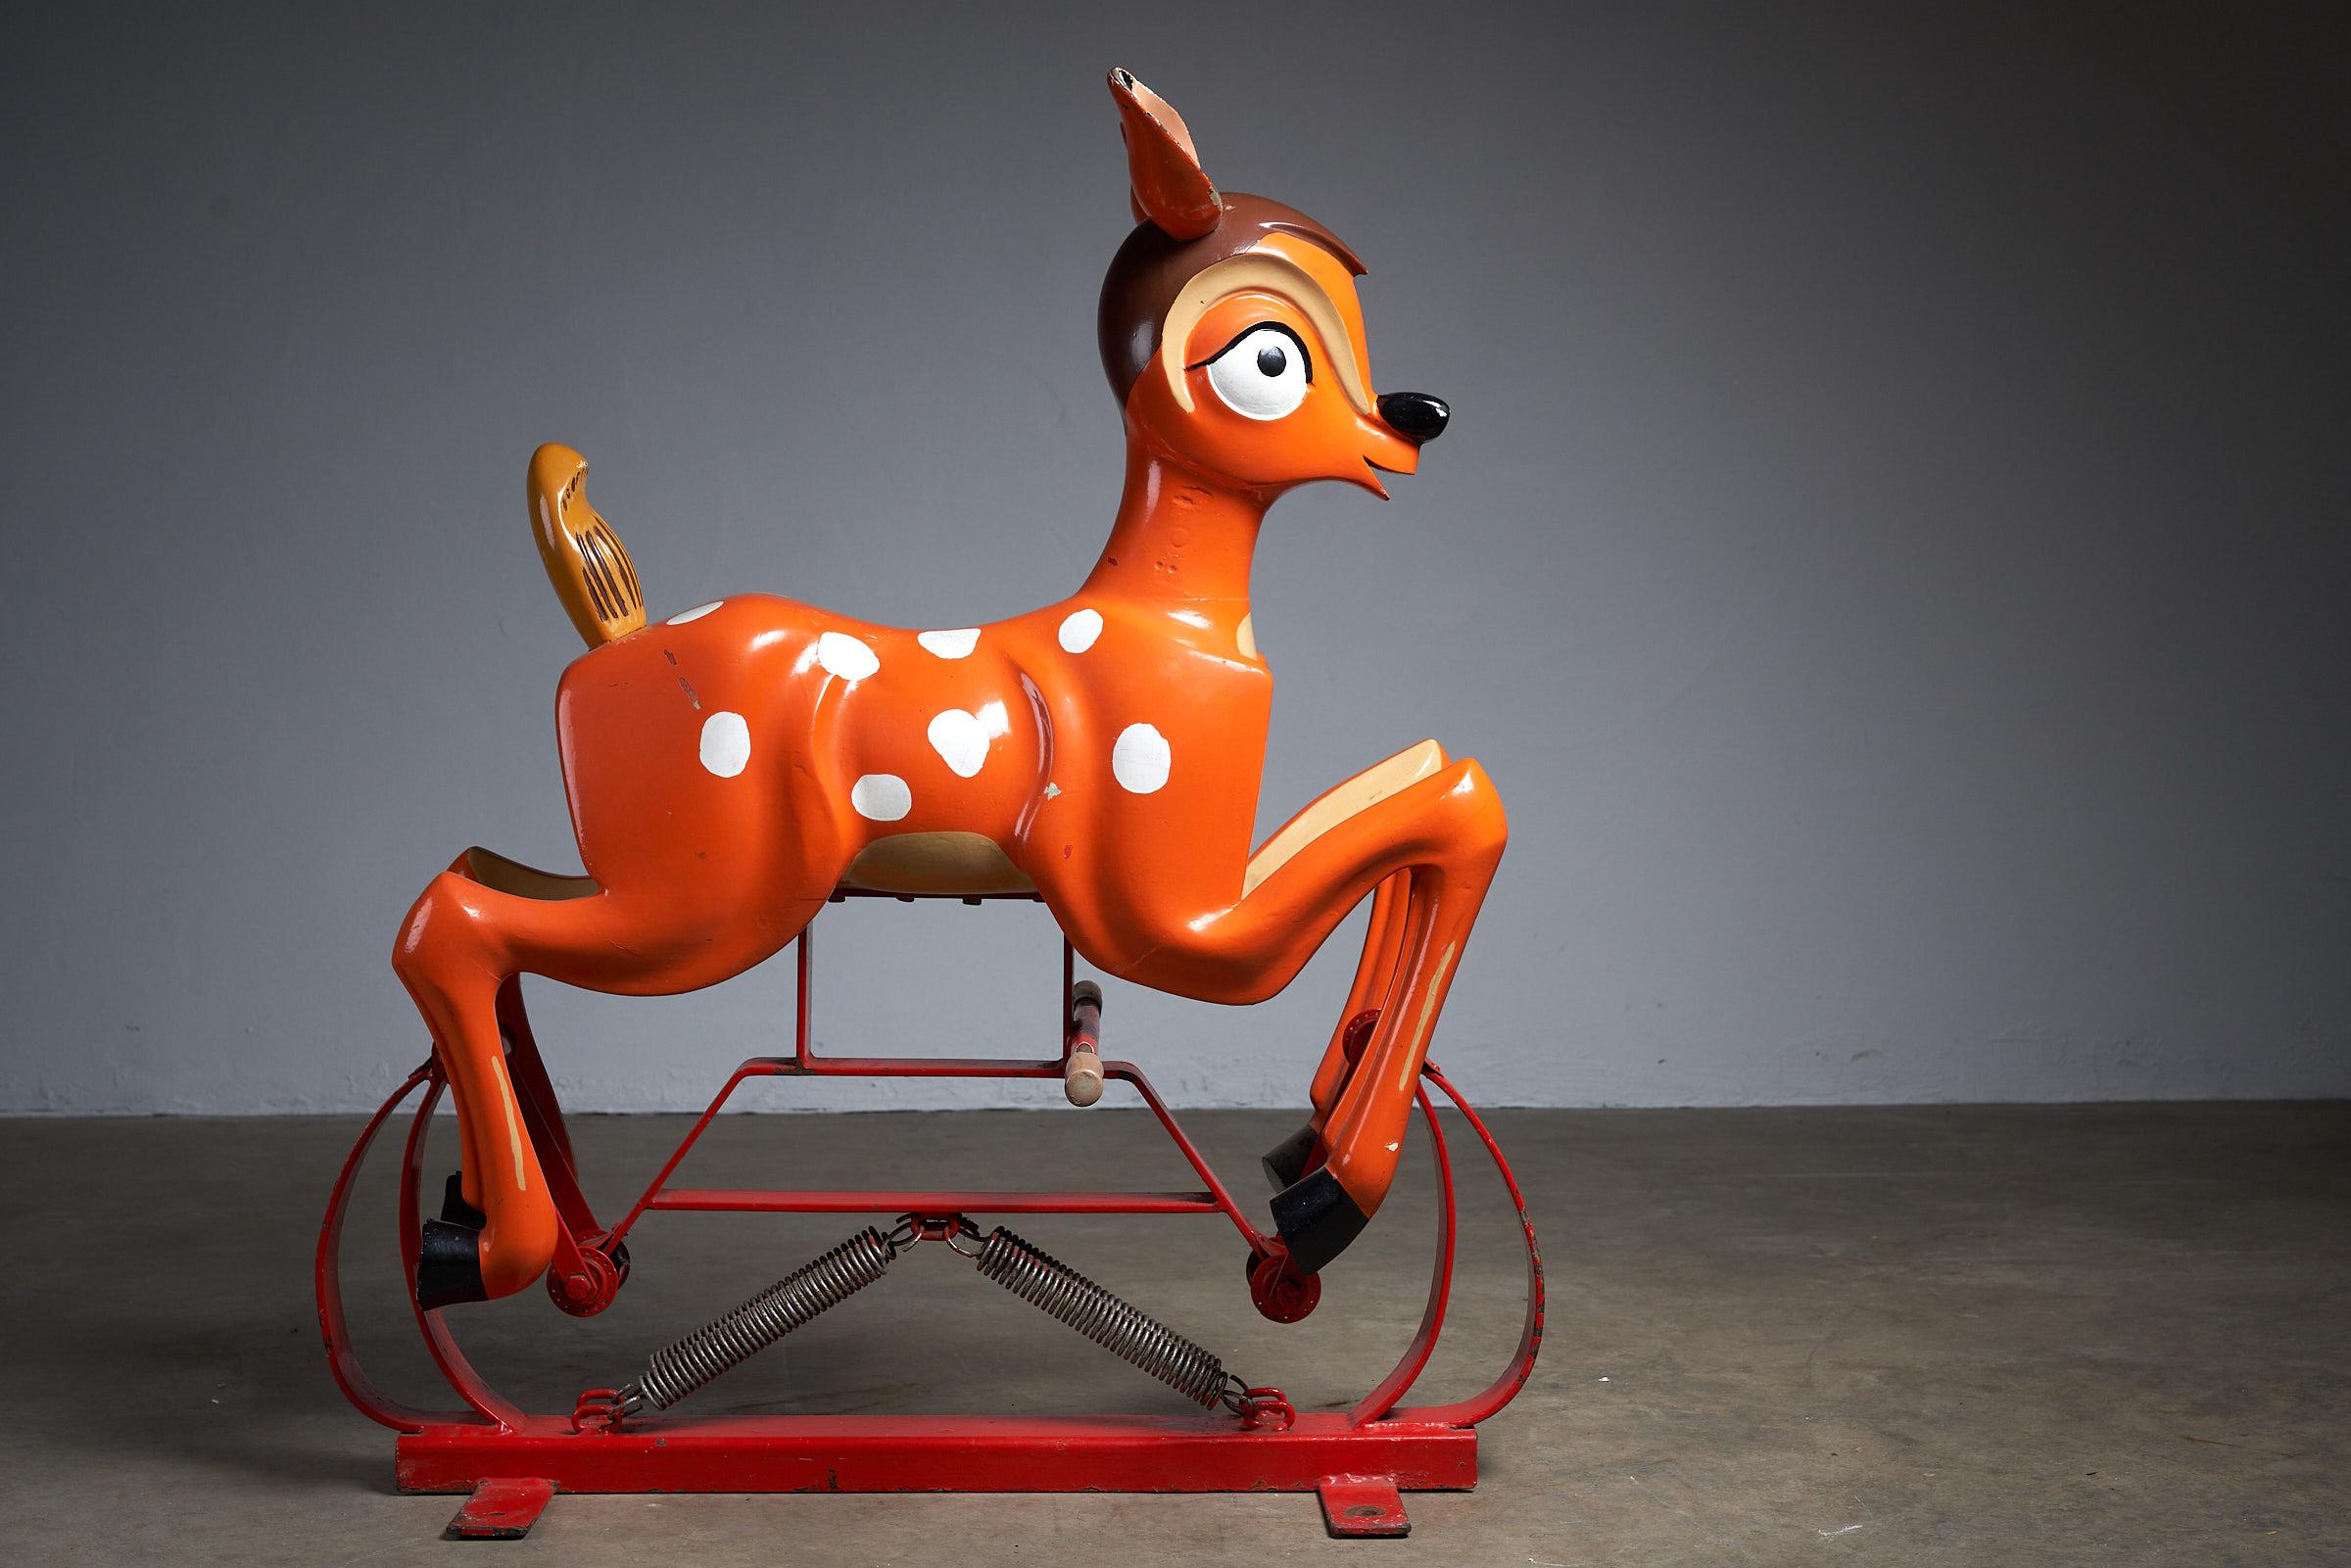 Retrouvez l'enchantement de l'enfance avec cette ravissante figurine de carrousel antique représentant un Bambi en bois sculpté. Montée sur un cadre métallique à bascule, cette pièce nostalgique évoque la fantaisie et le charme des carrousels